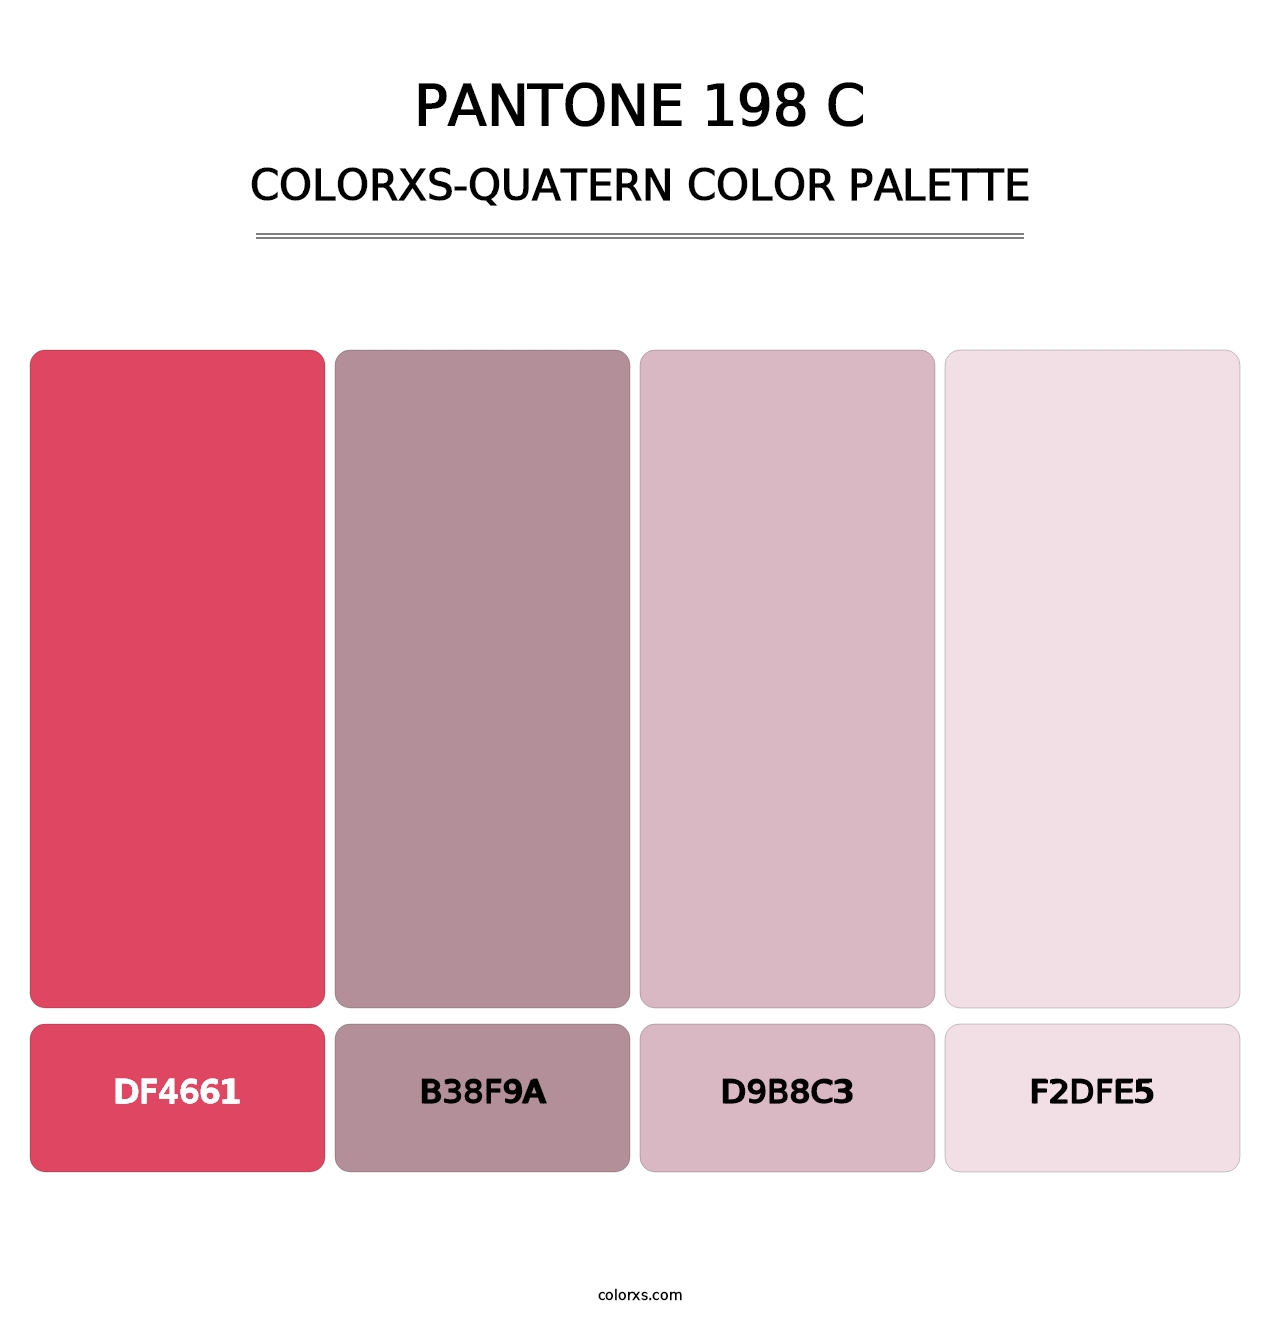 PANTONE 198 C - Colorxs Quatern Palette